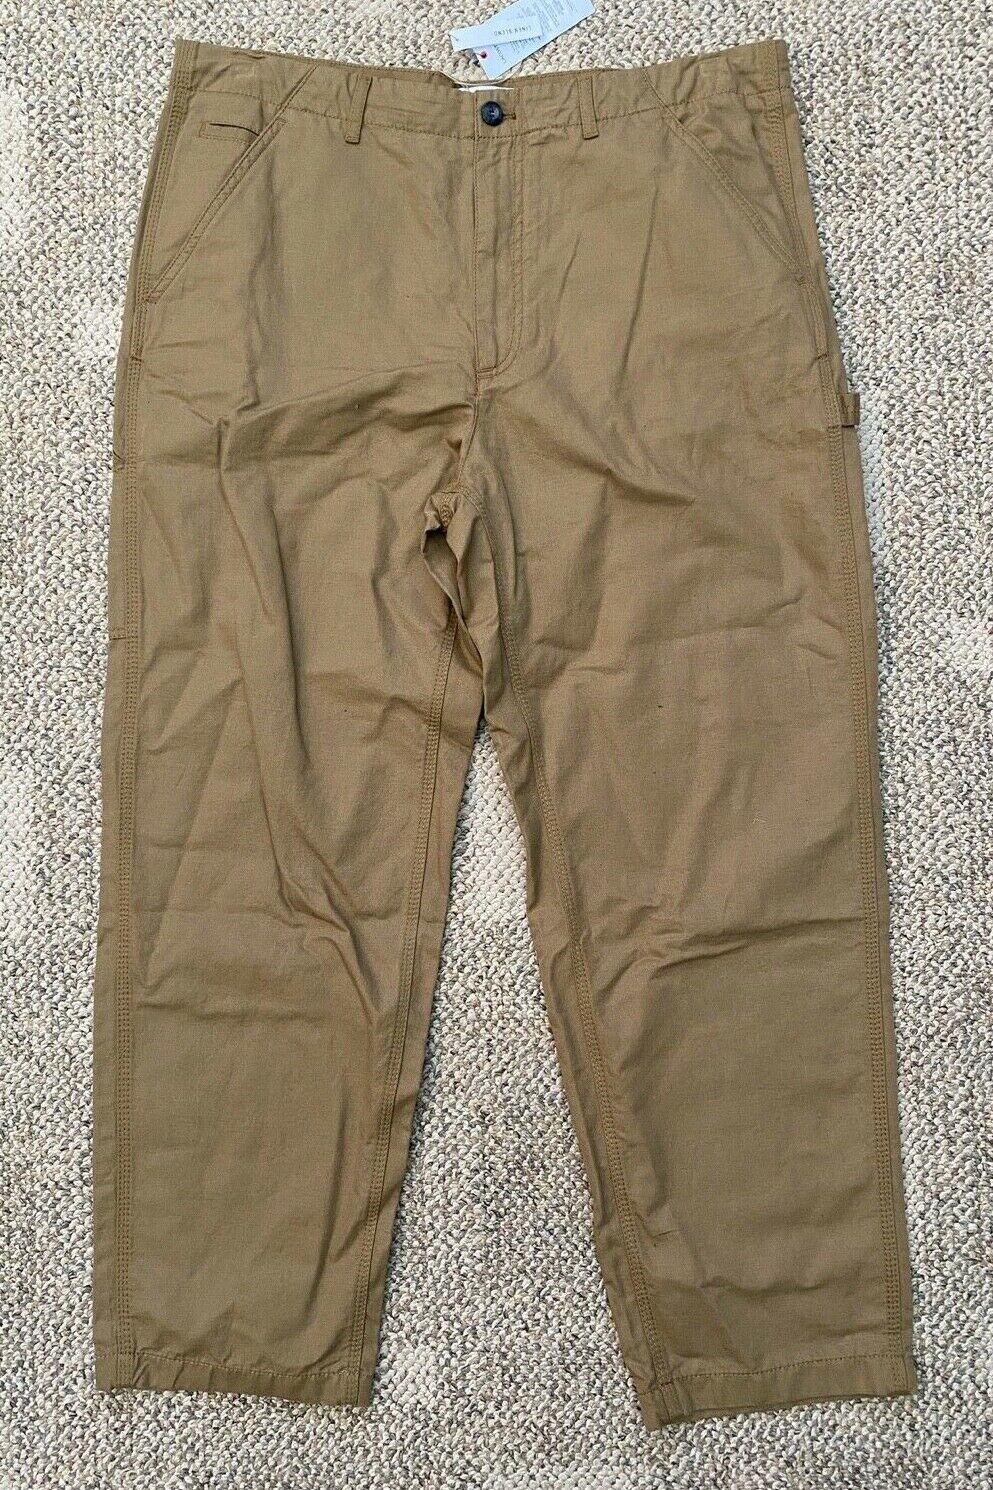 Lacoste Mens Linen Blend Carpenter Pants Brown Size 38 X 29 